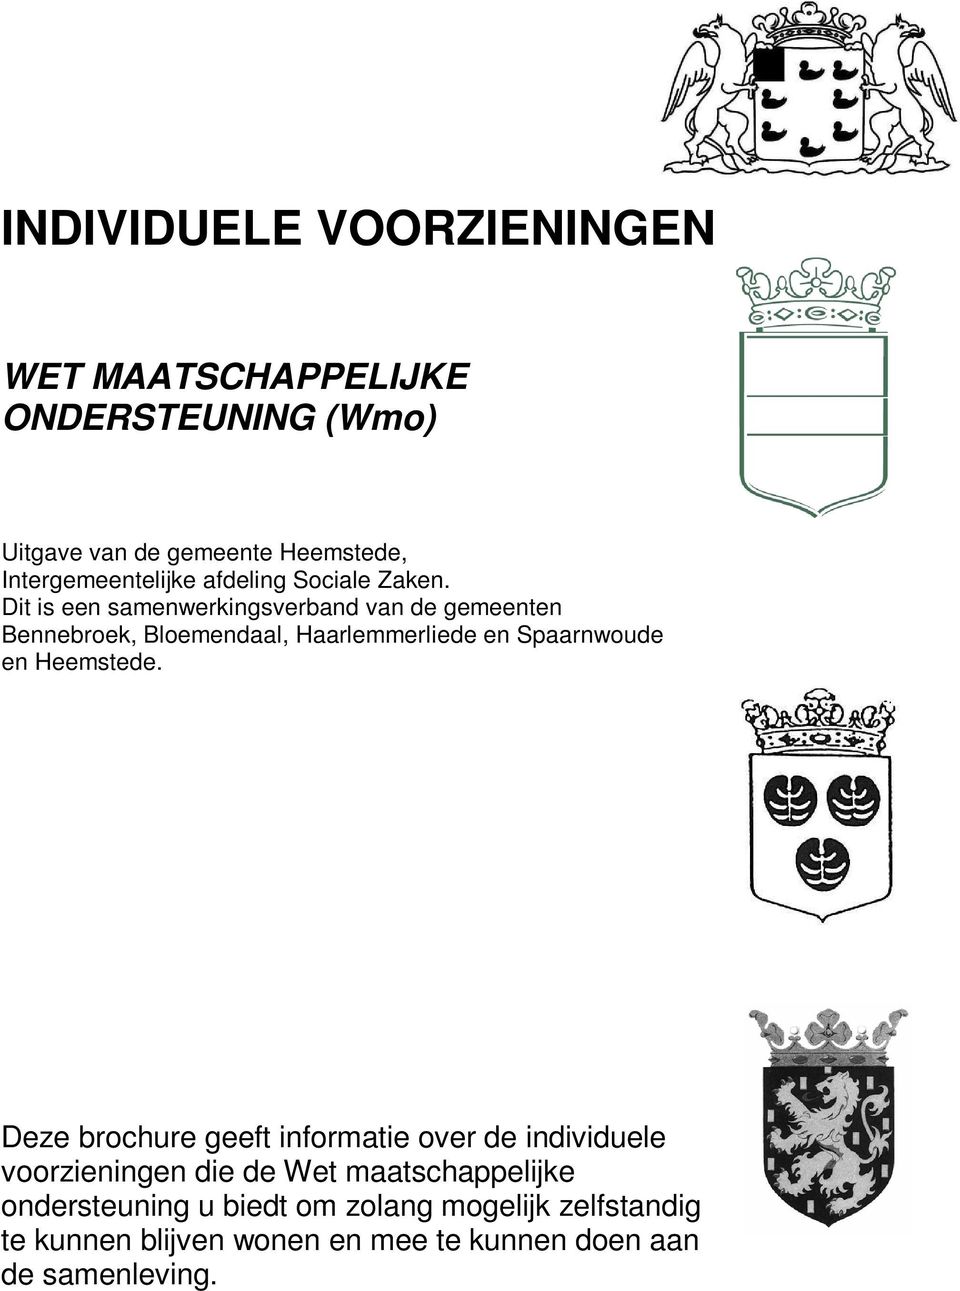 Dit is een samenwerkingsverband van de gemeenten Bennebroek, Bloemendaal, Haarlemmerliede en Spaarnwoude en Heemstede.